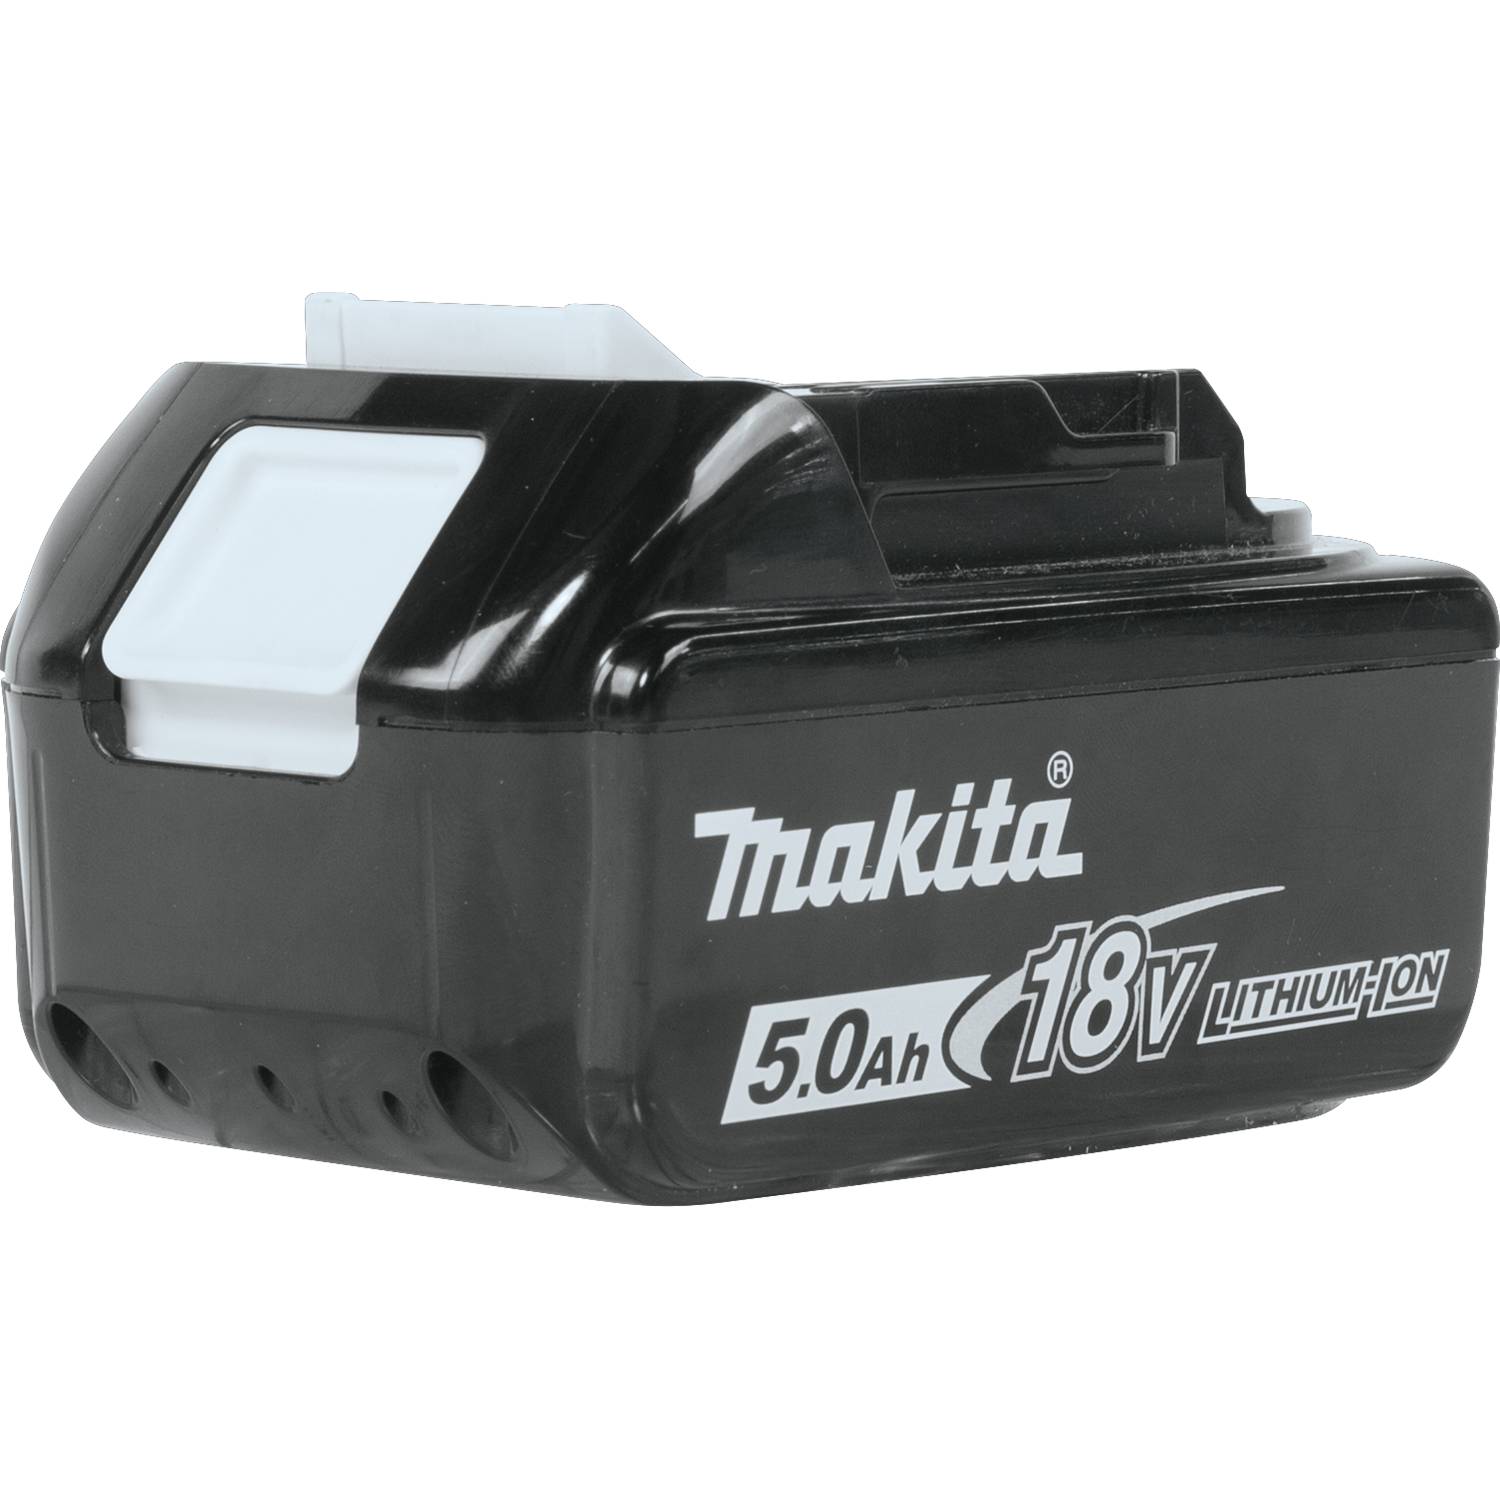 BL1850B-2 Makita Battery Pack, 18V 5.0AH 7